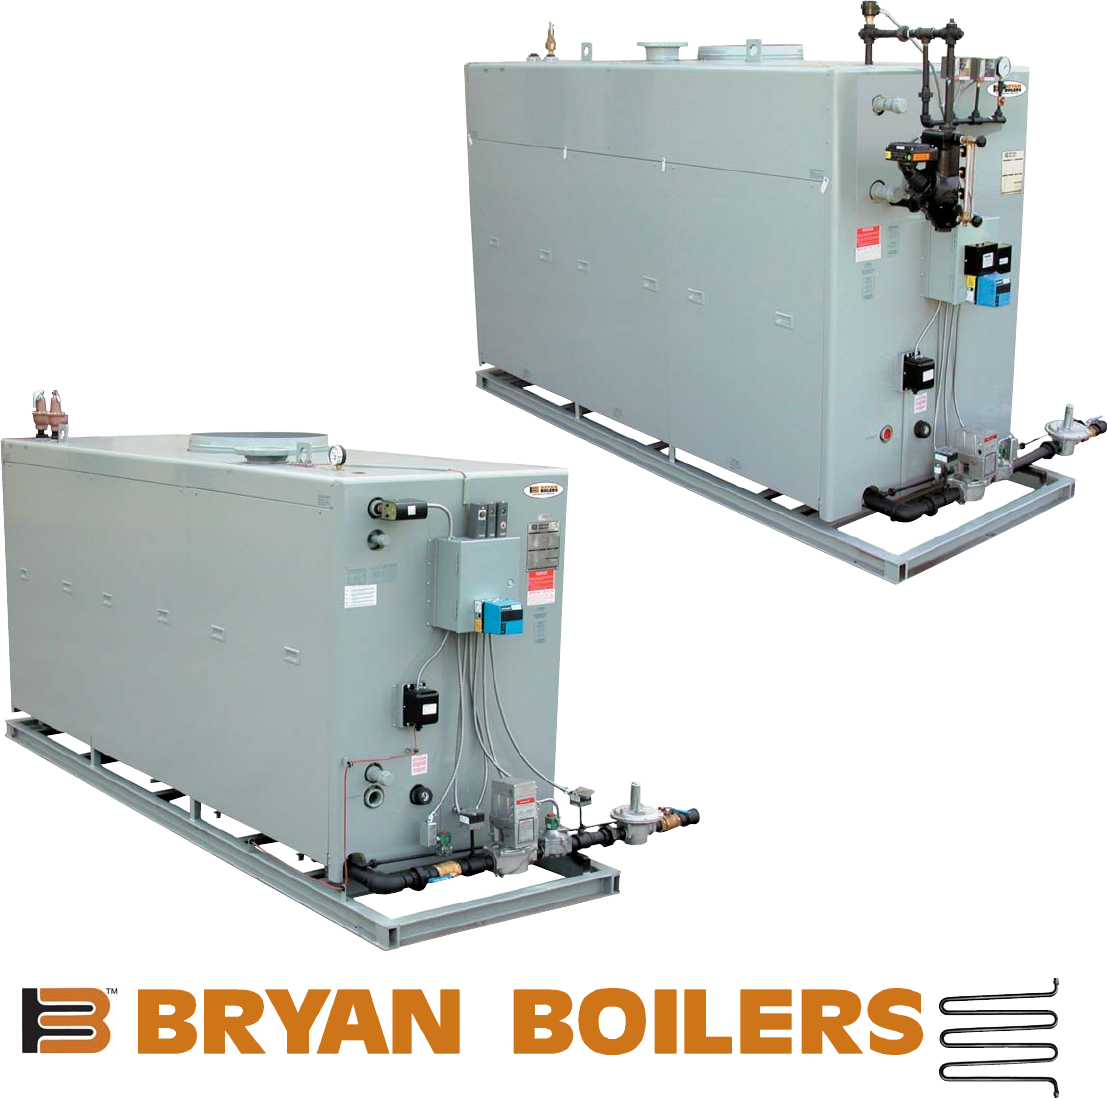 Bryan steam boiler manual